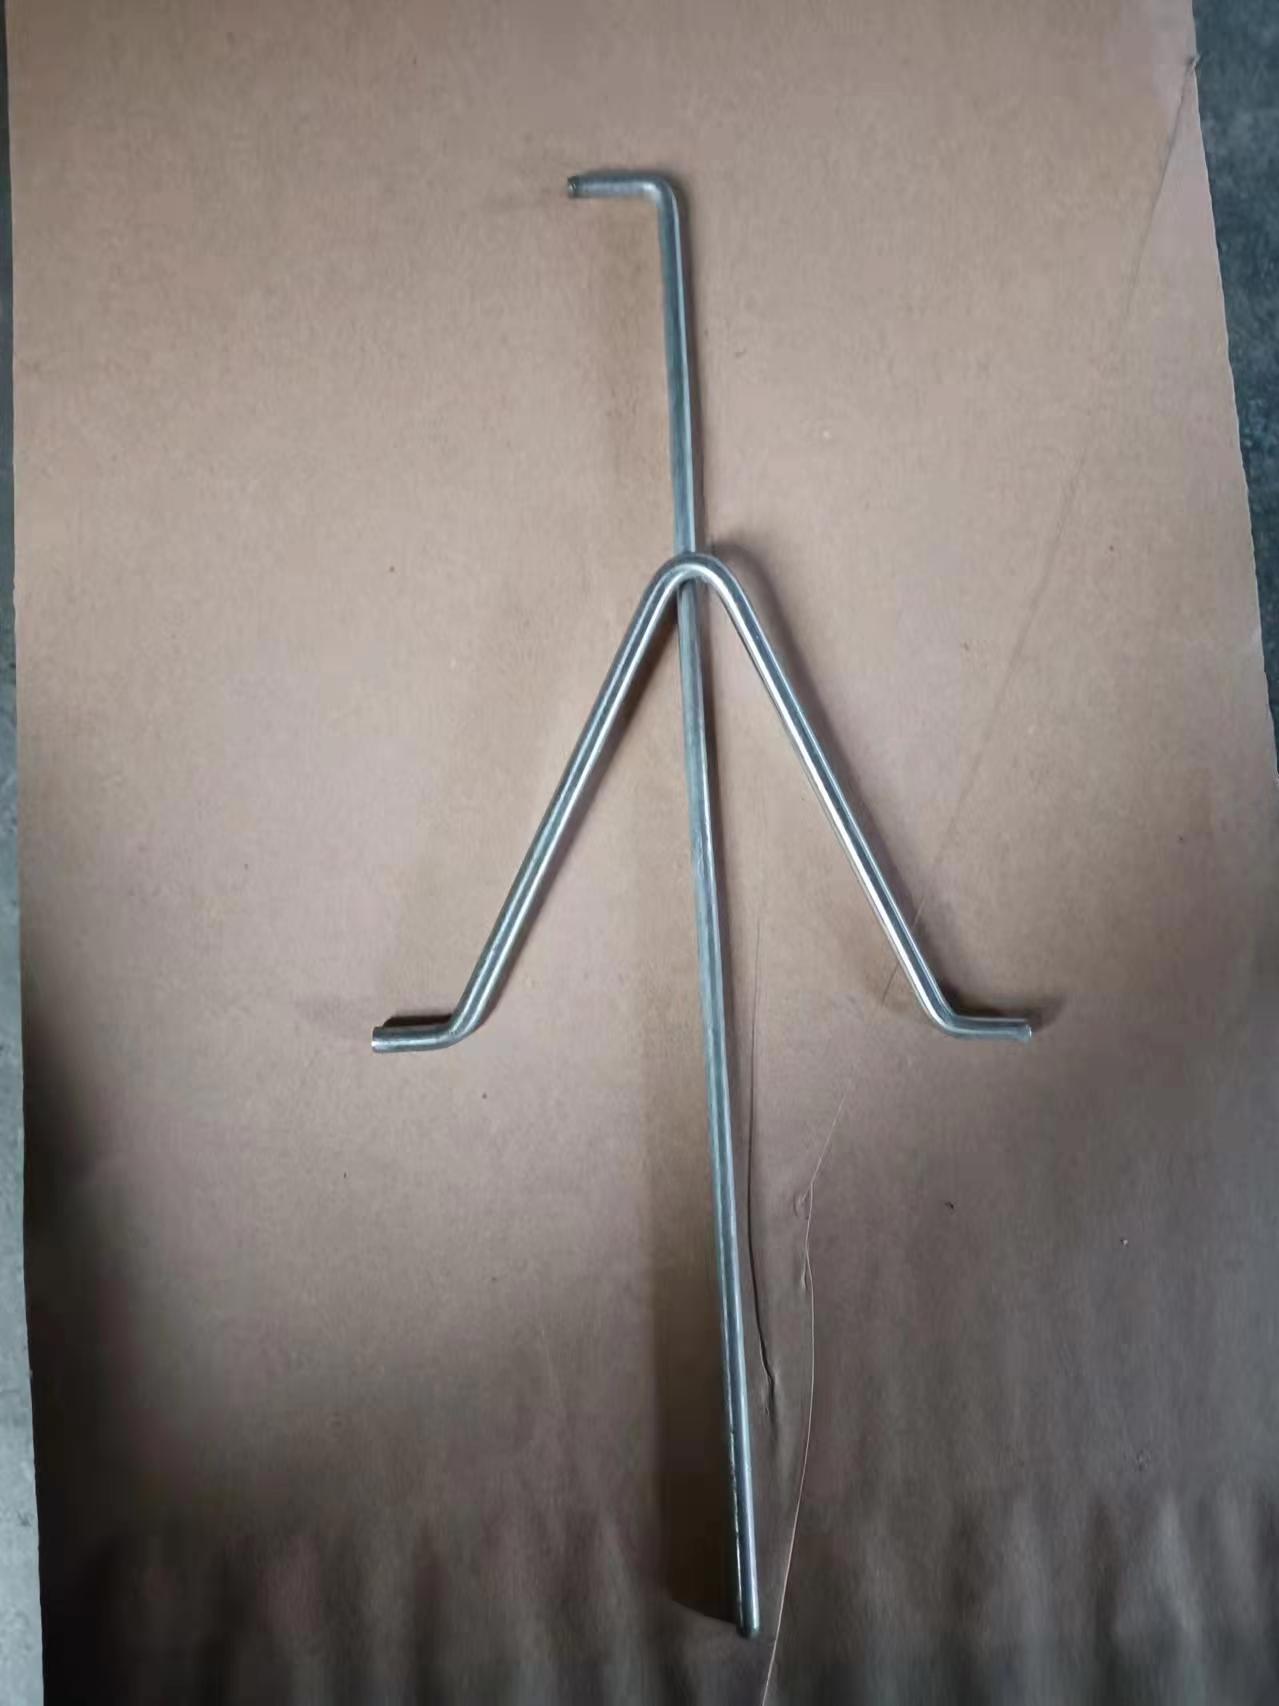 不锈钢锚固件，螺杆，抓钩，不锈钢圆轴，钢板，等各种不锈钢产品